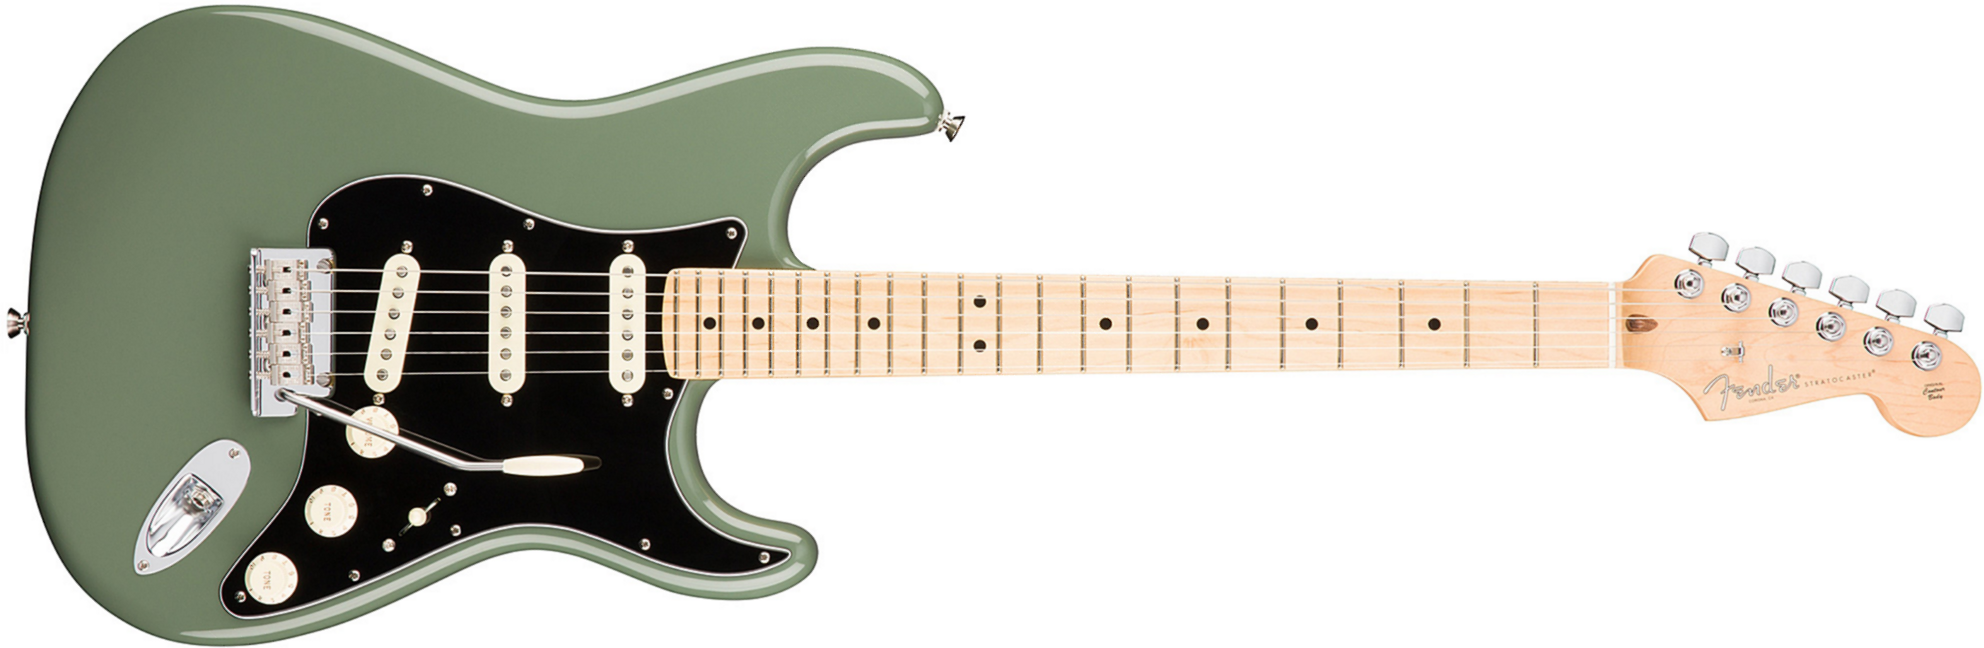 Fender Strat American Professional 2017 3s Usa Mn - Antique Olive - Elektrische gitaar in Str-vorm - Main picture